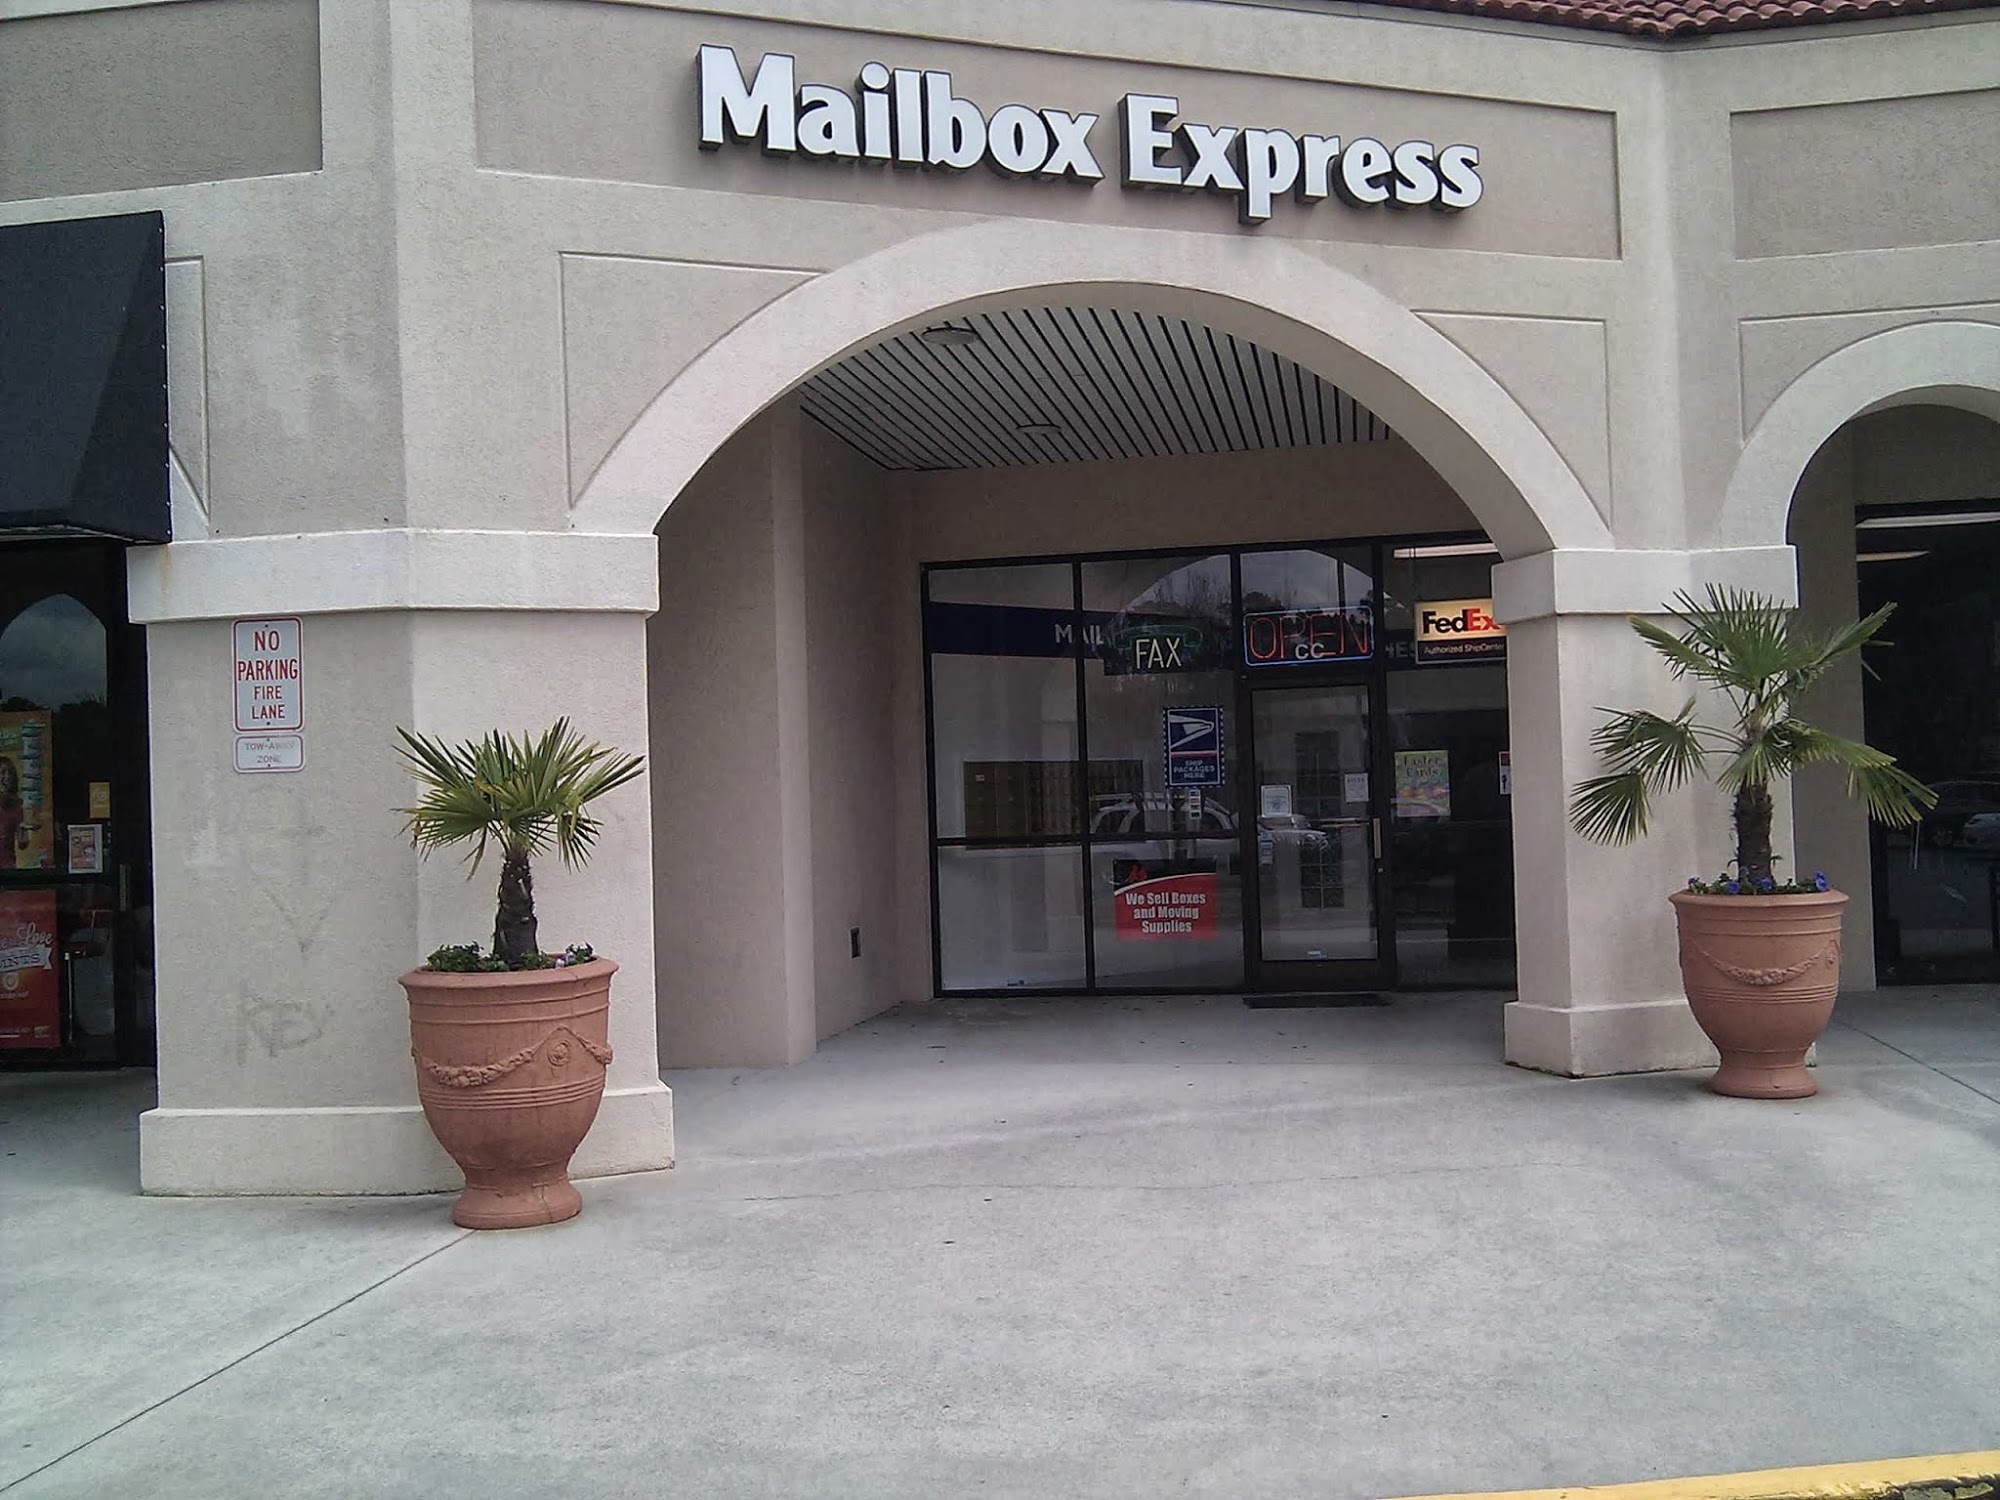 Mailbox Express -- A PackageHub Business Center